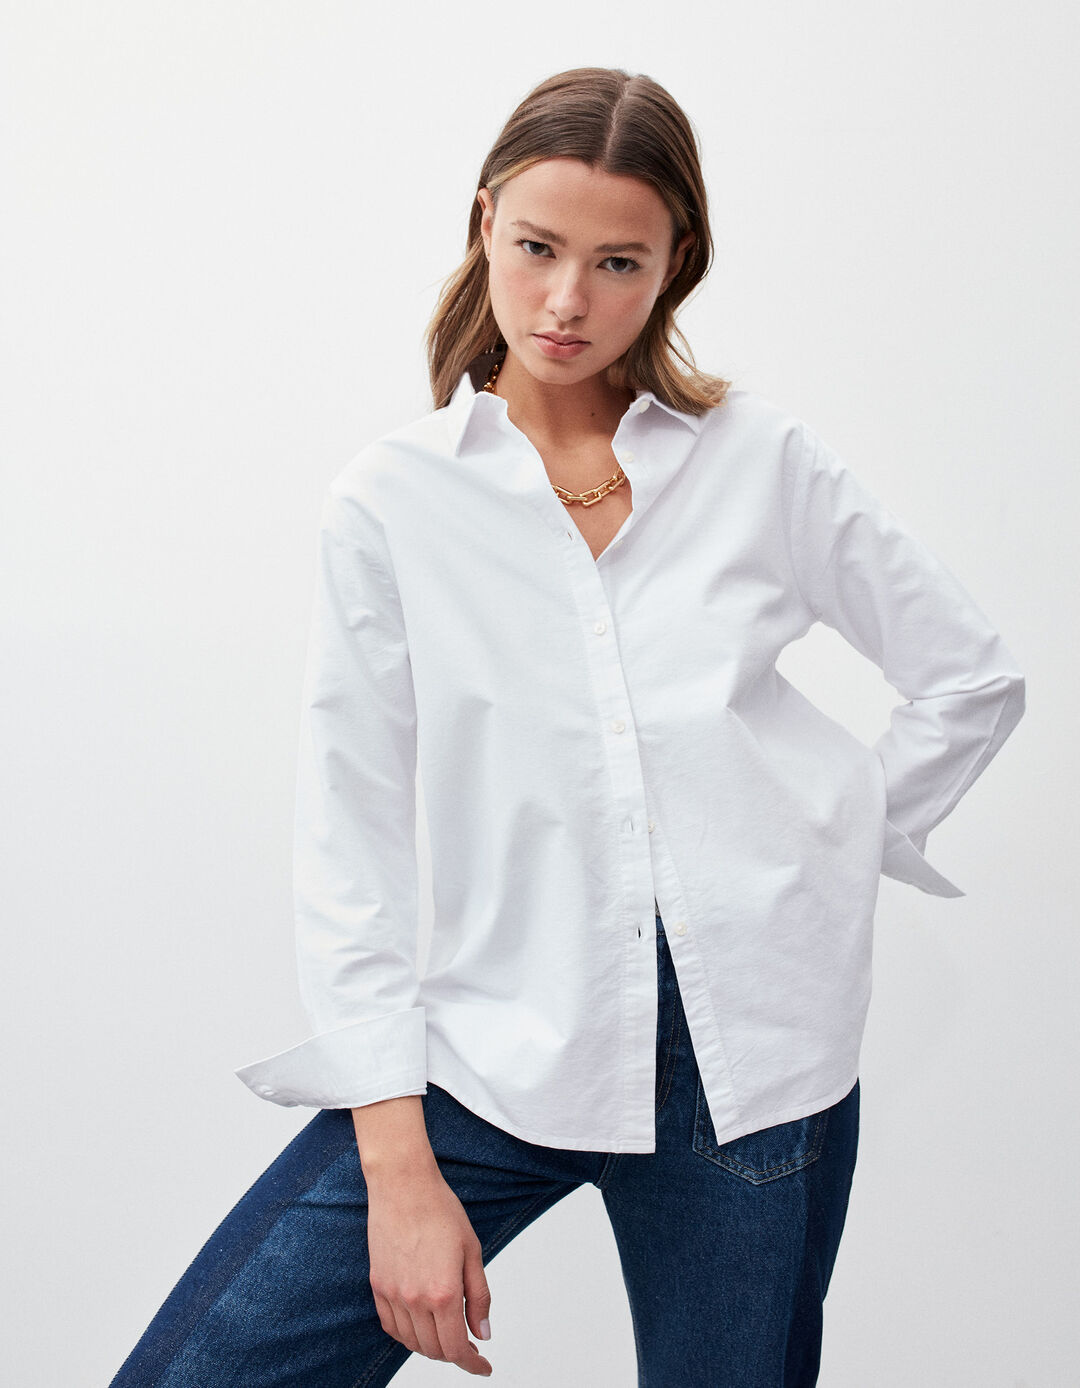 Oxford shirt, woman, white